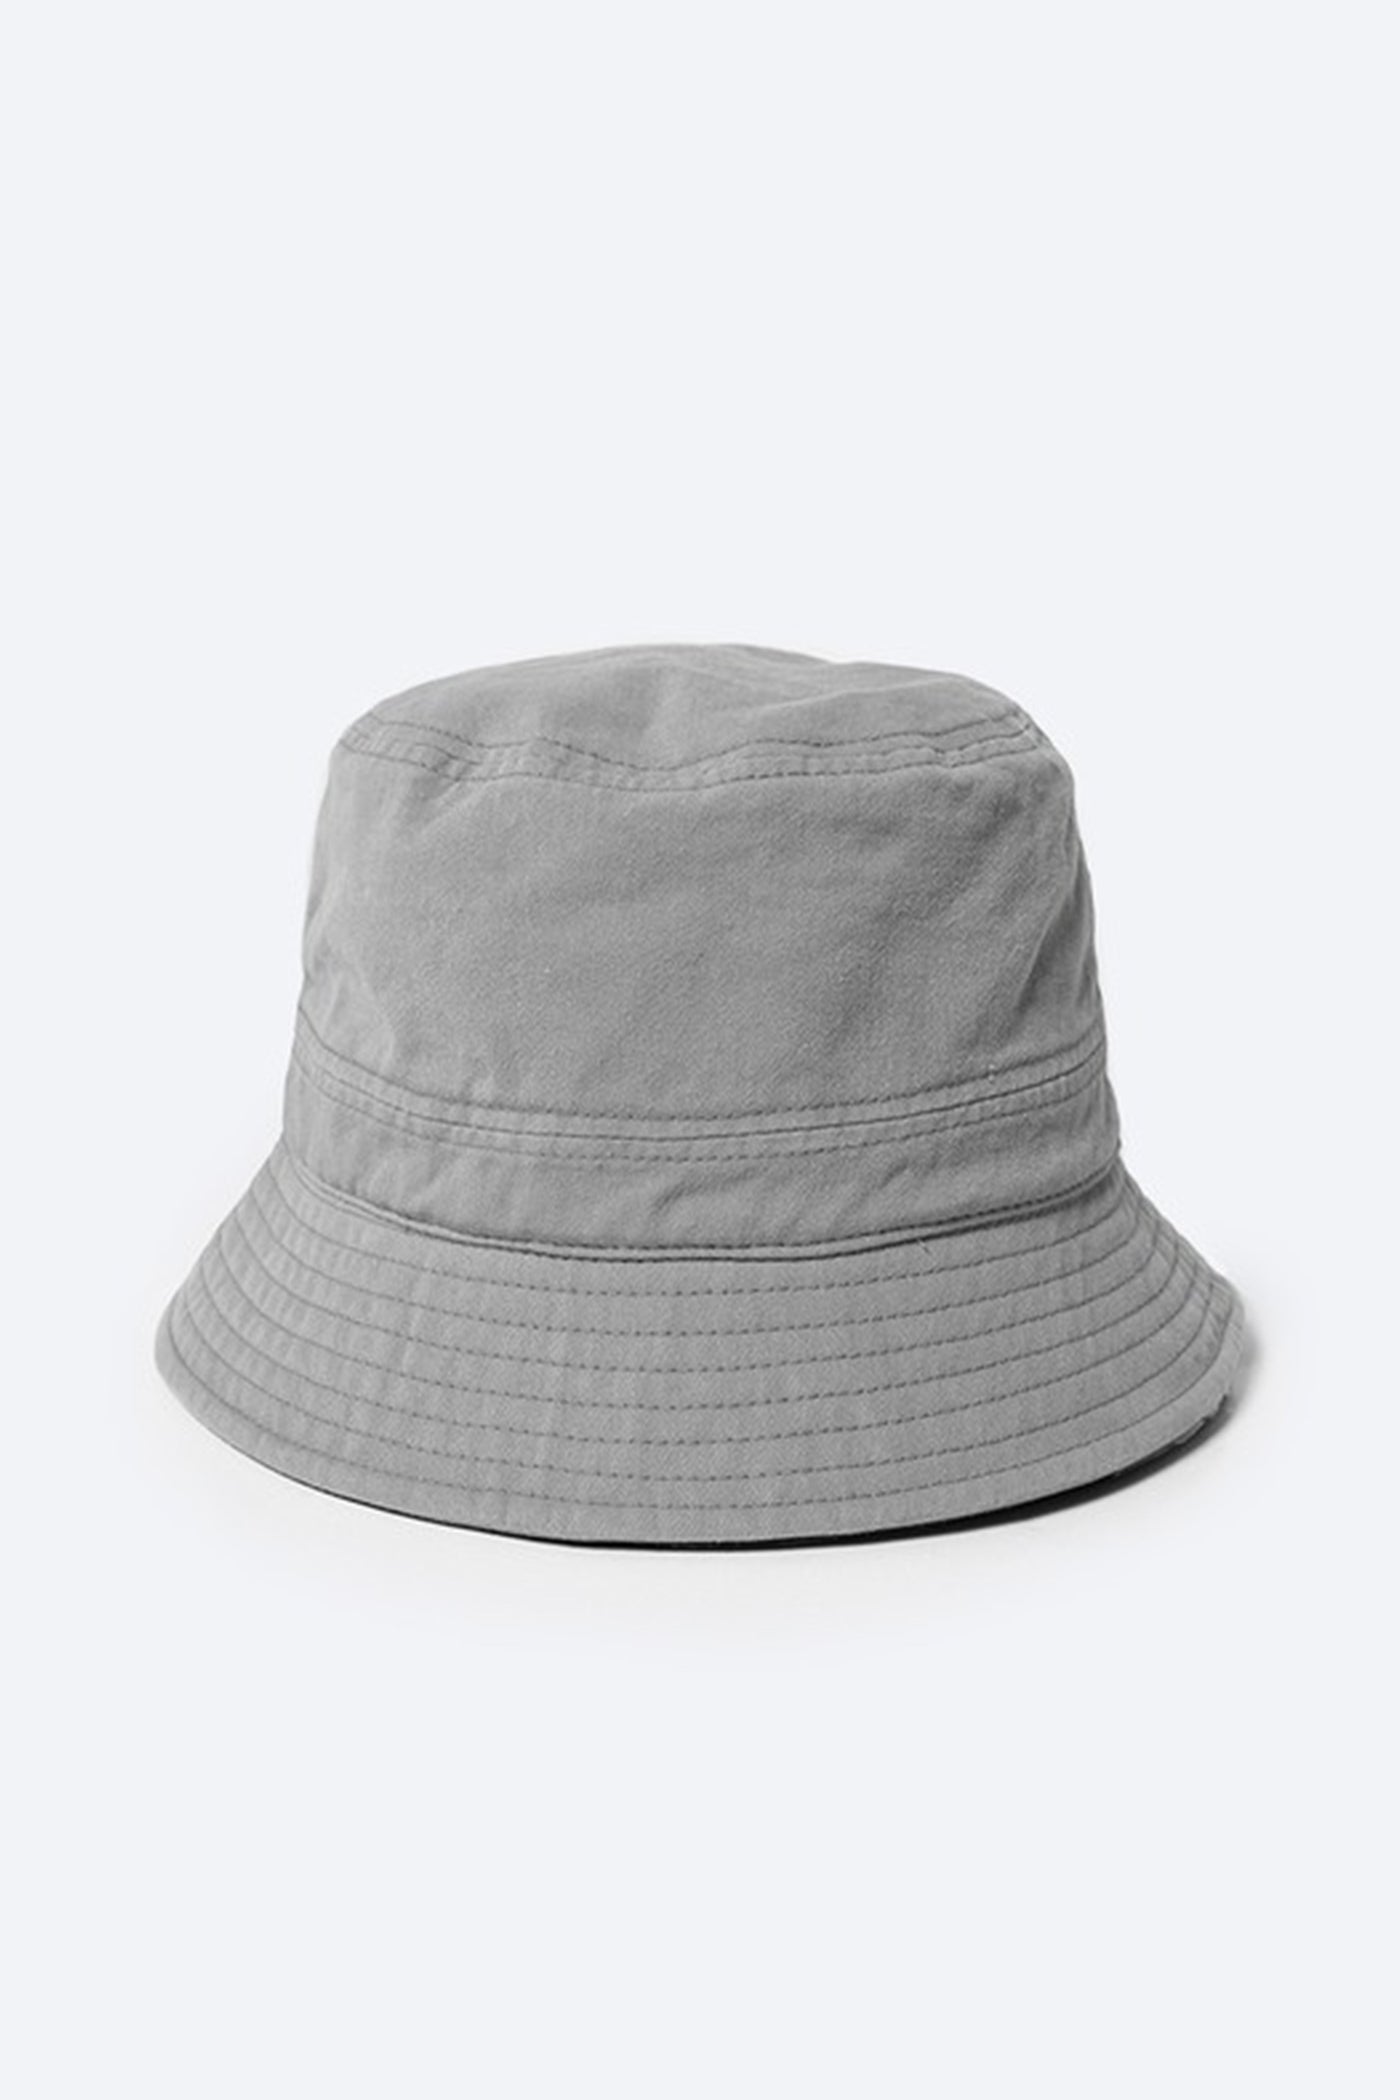 solid grey bucket hat